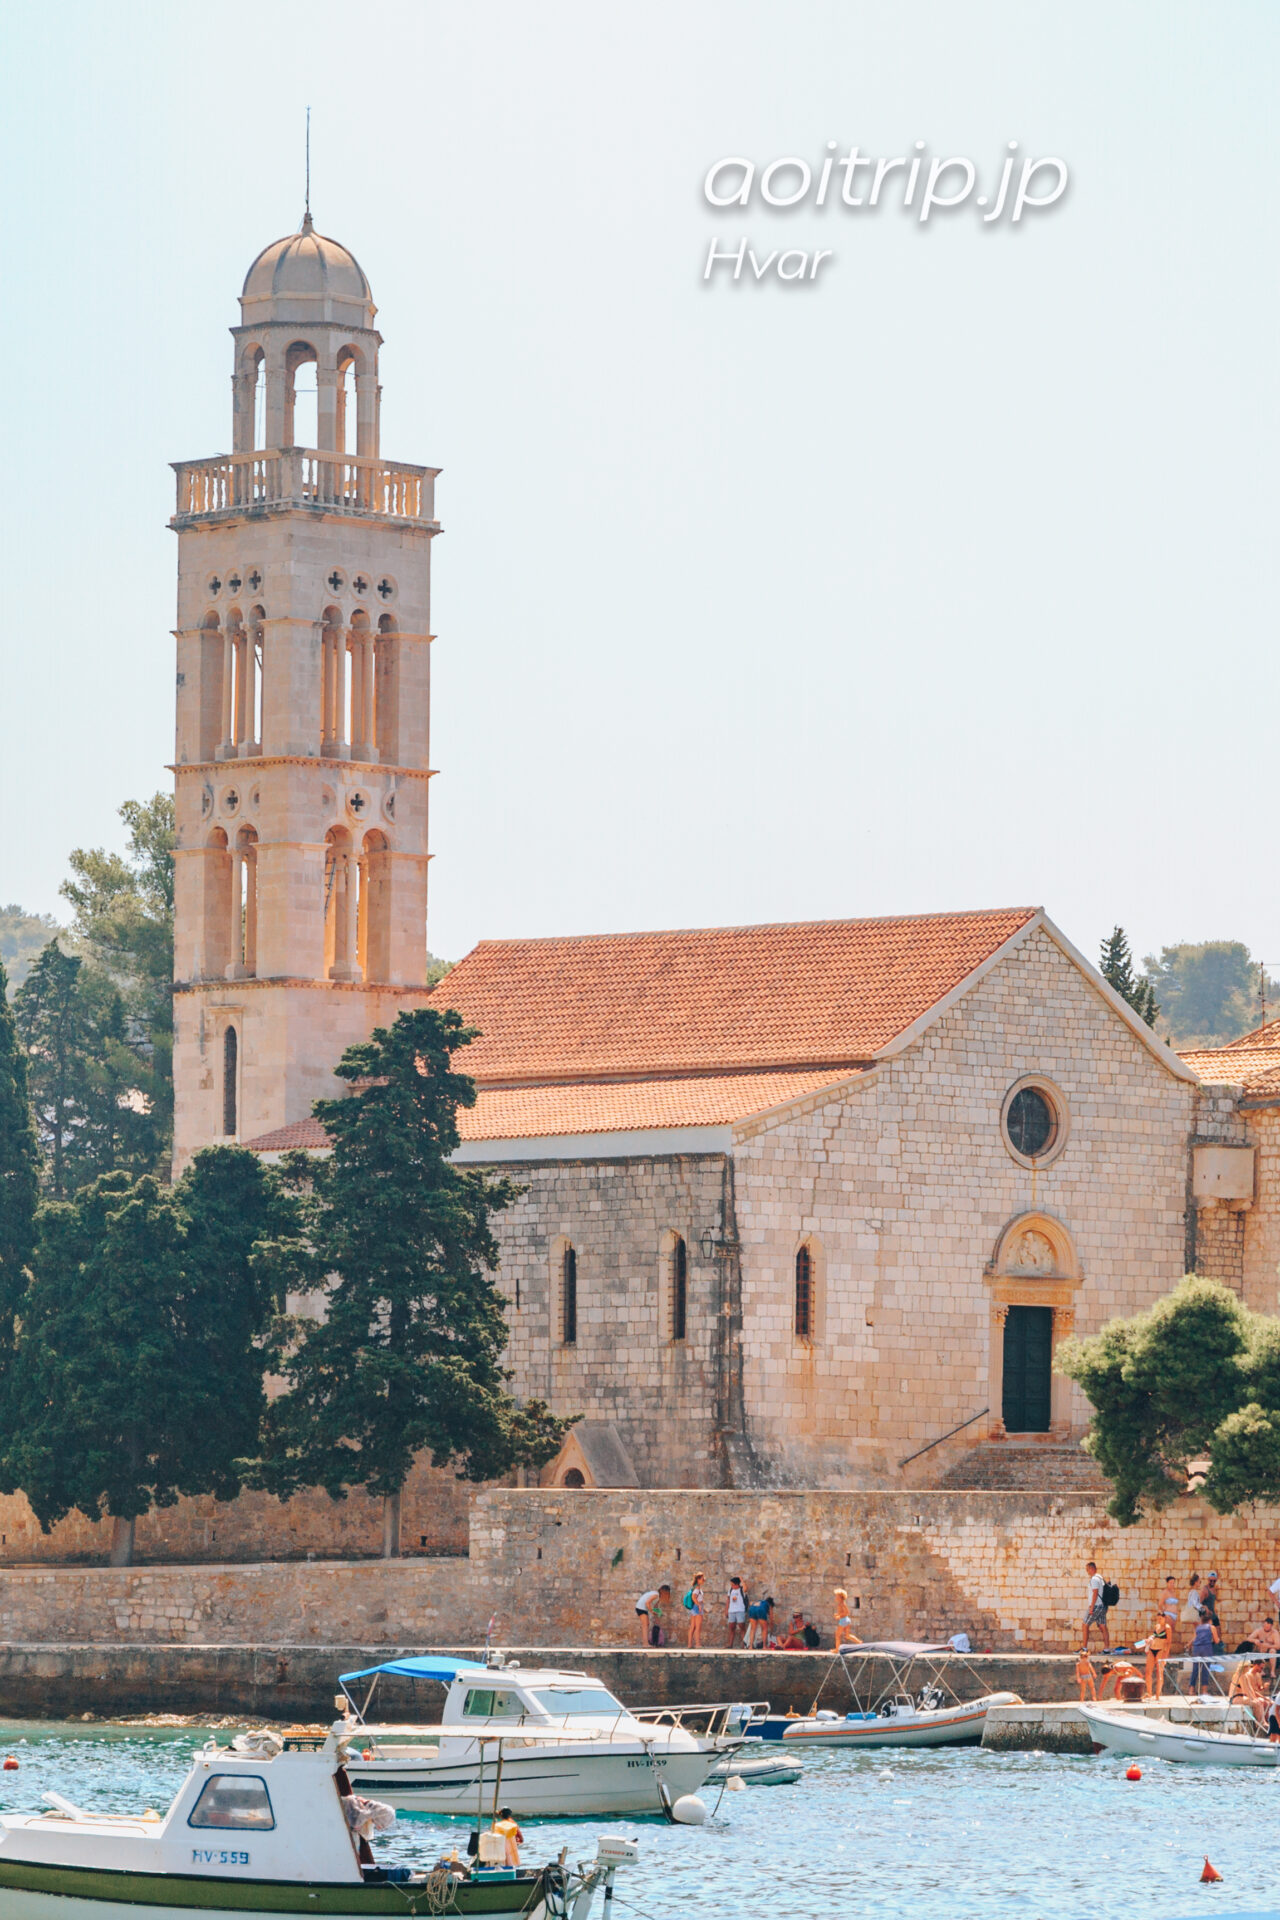 クロアチア フヴァル島のフランシスコ会修道院 Franciscan monastery